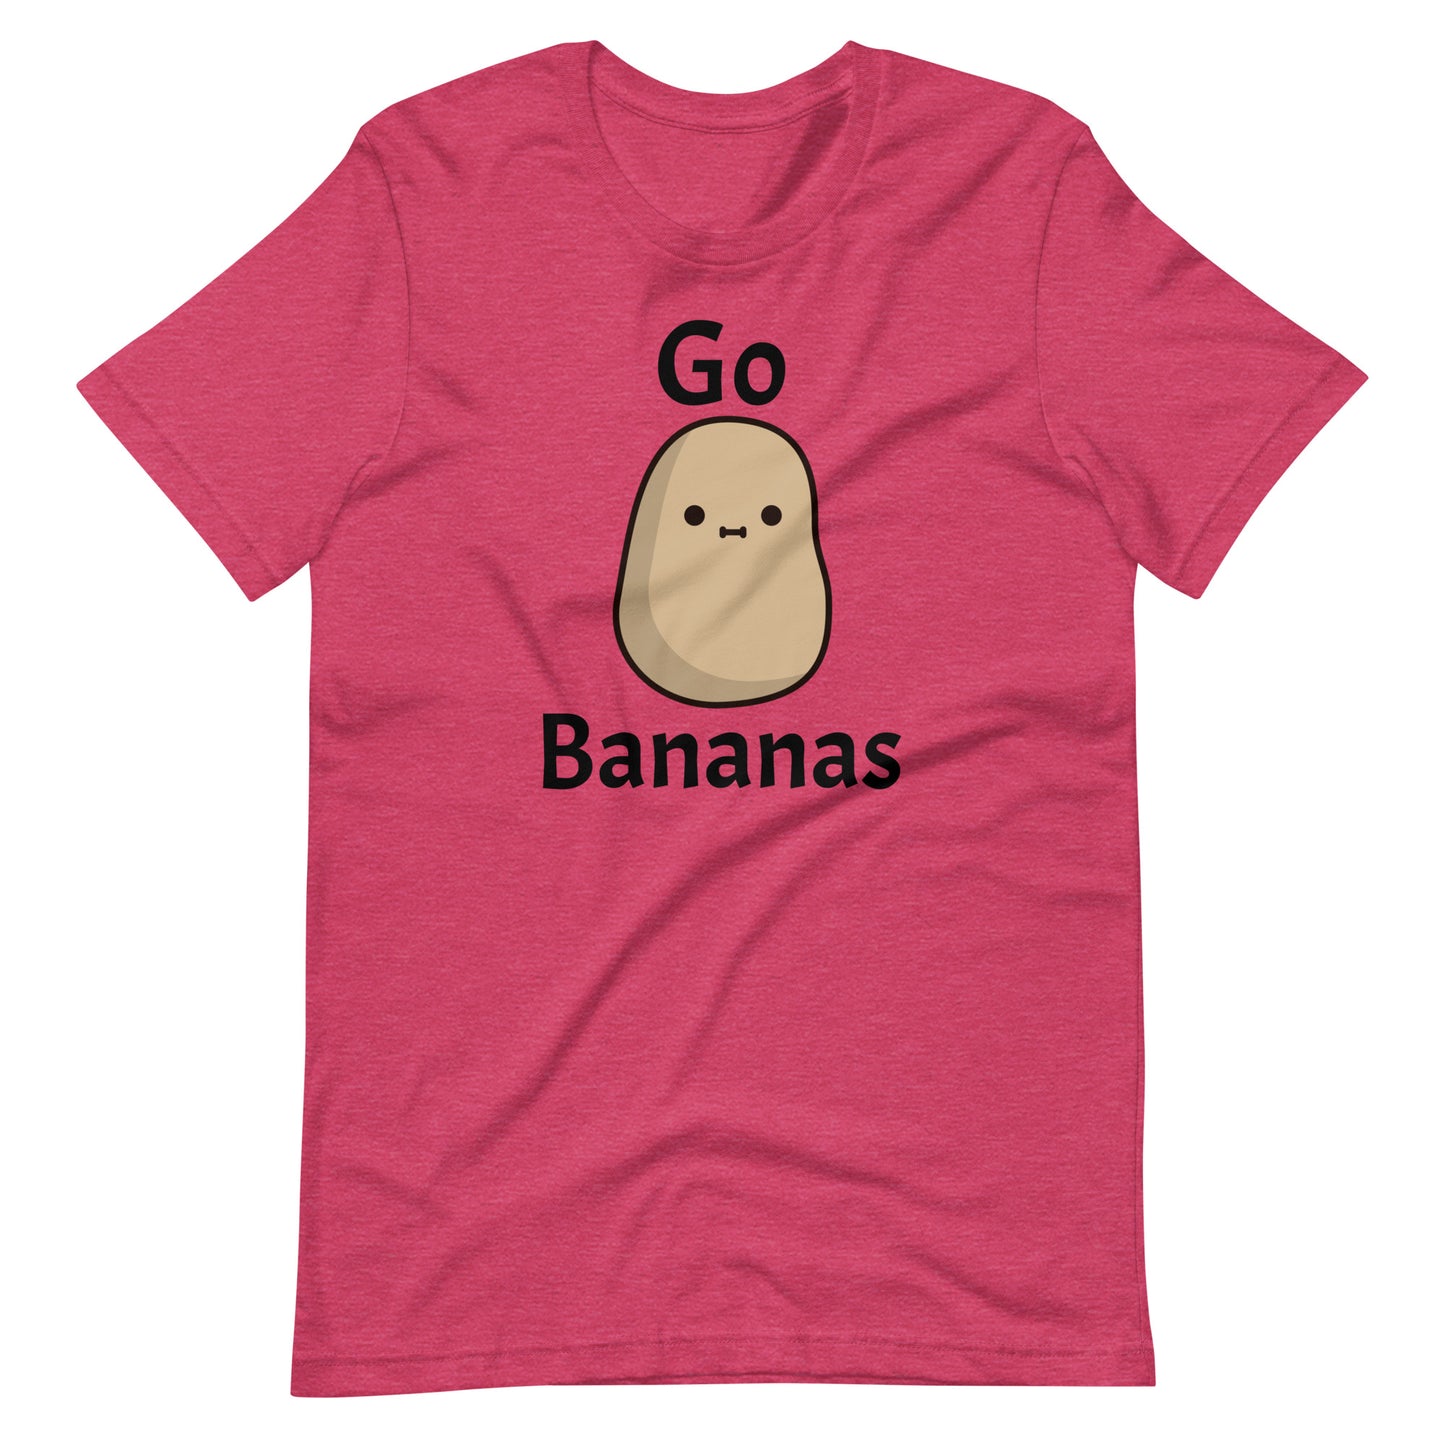 Go Bananas Shirt